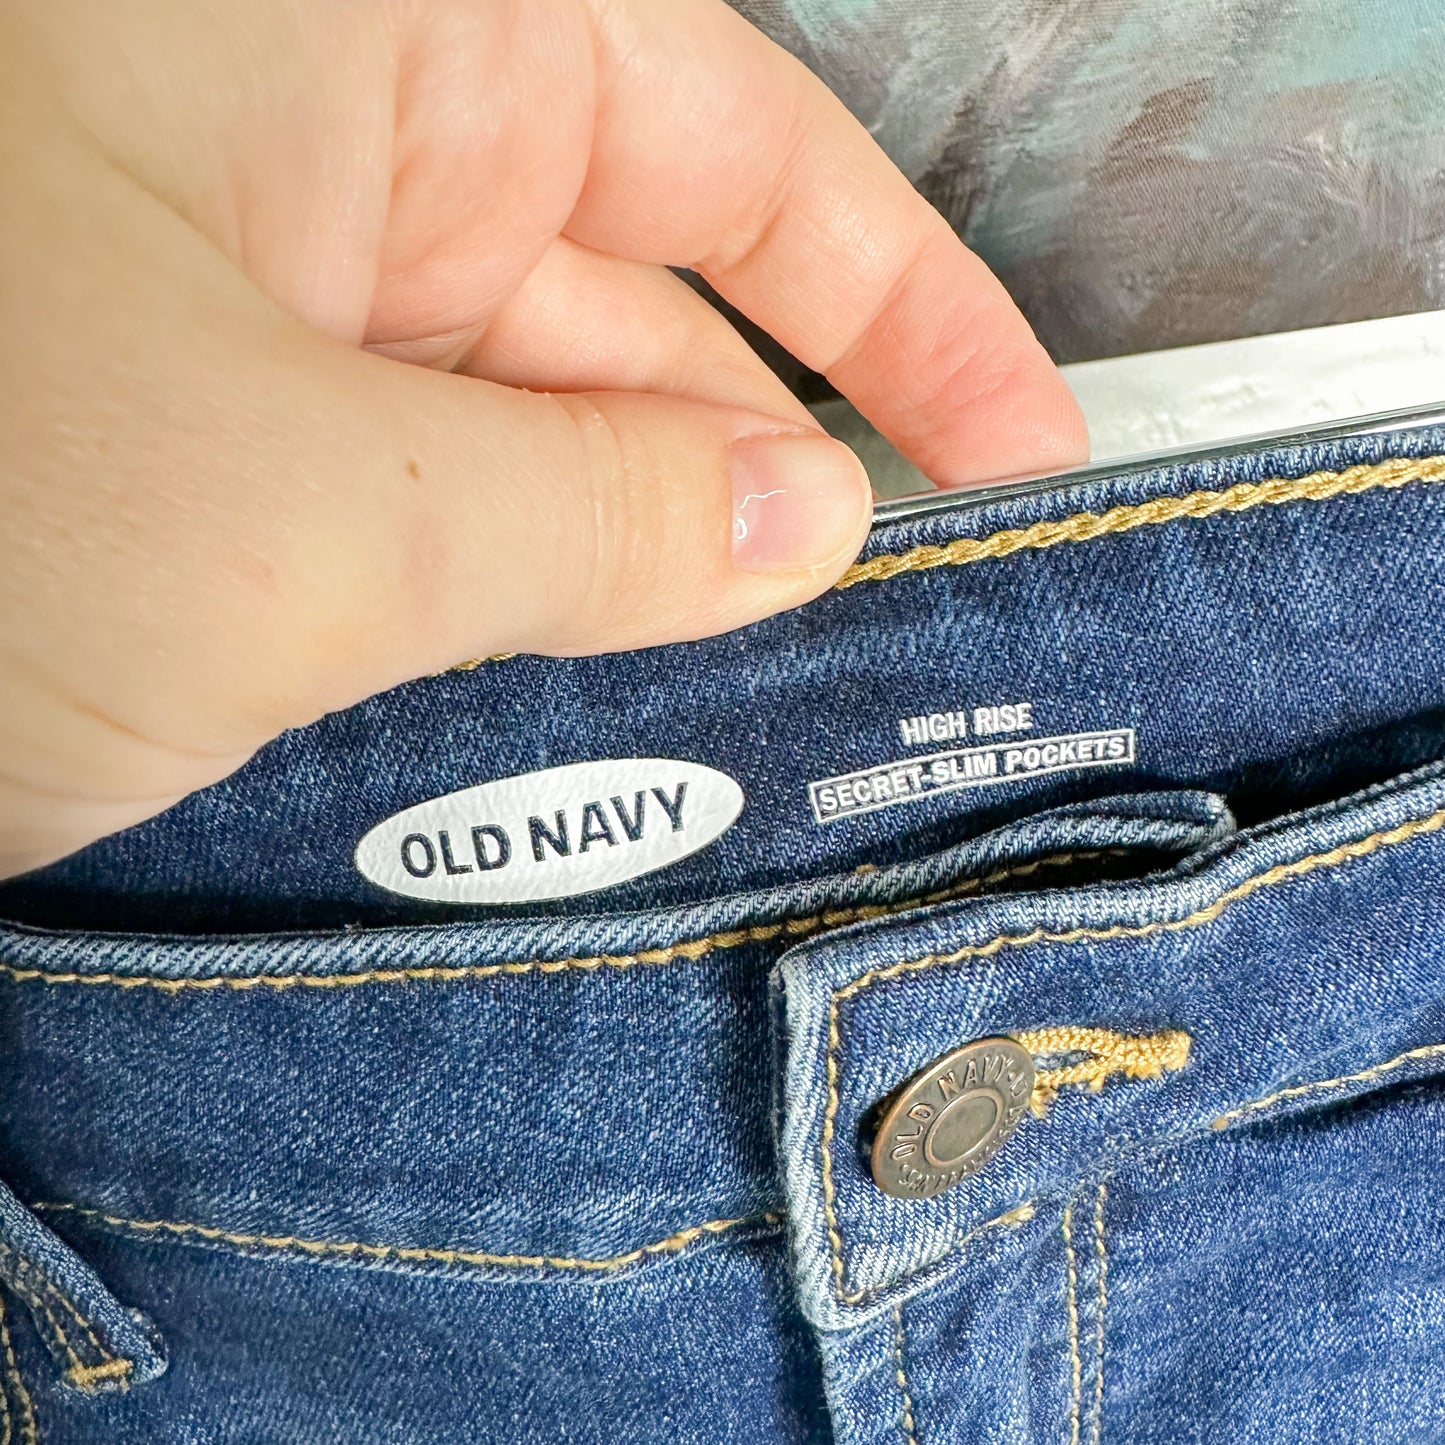 Old Navy Distressed High Rise Secret Slim Pocket Shorts Size 8